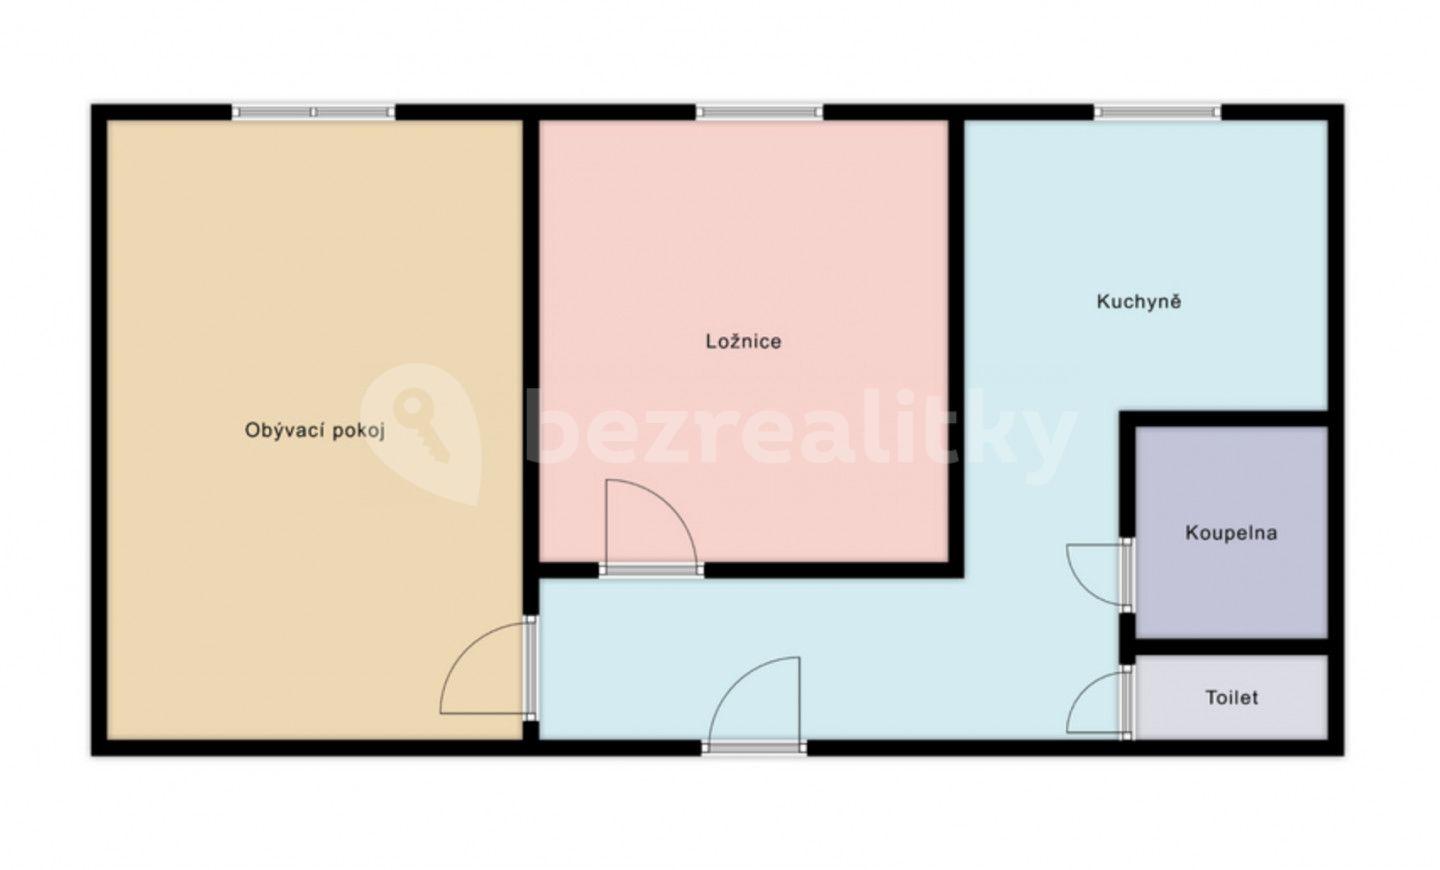 2 bedroom flat for sale, 50 m², Okružní, Orlová, Moravskoslezský Region